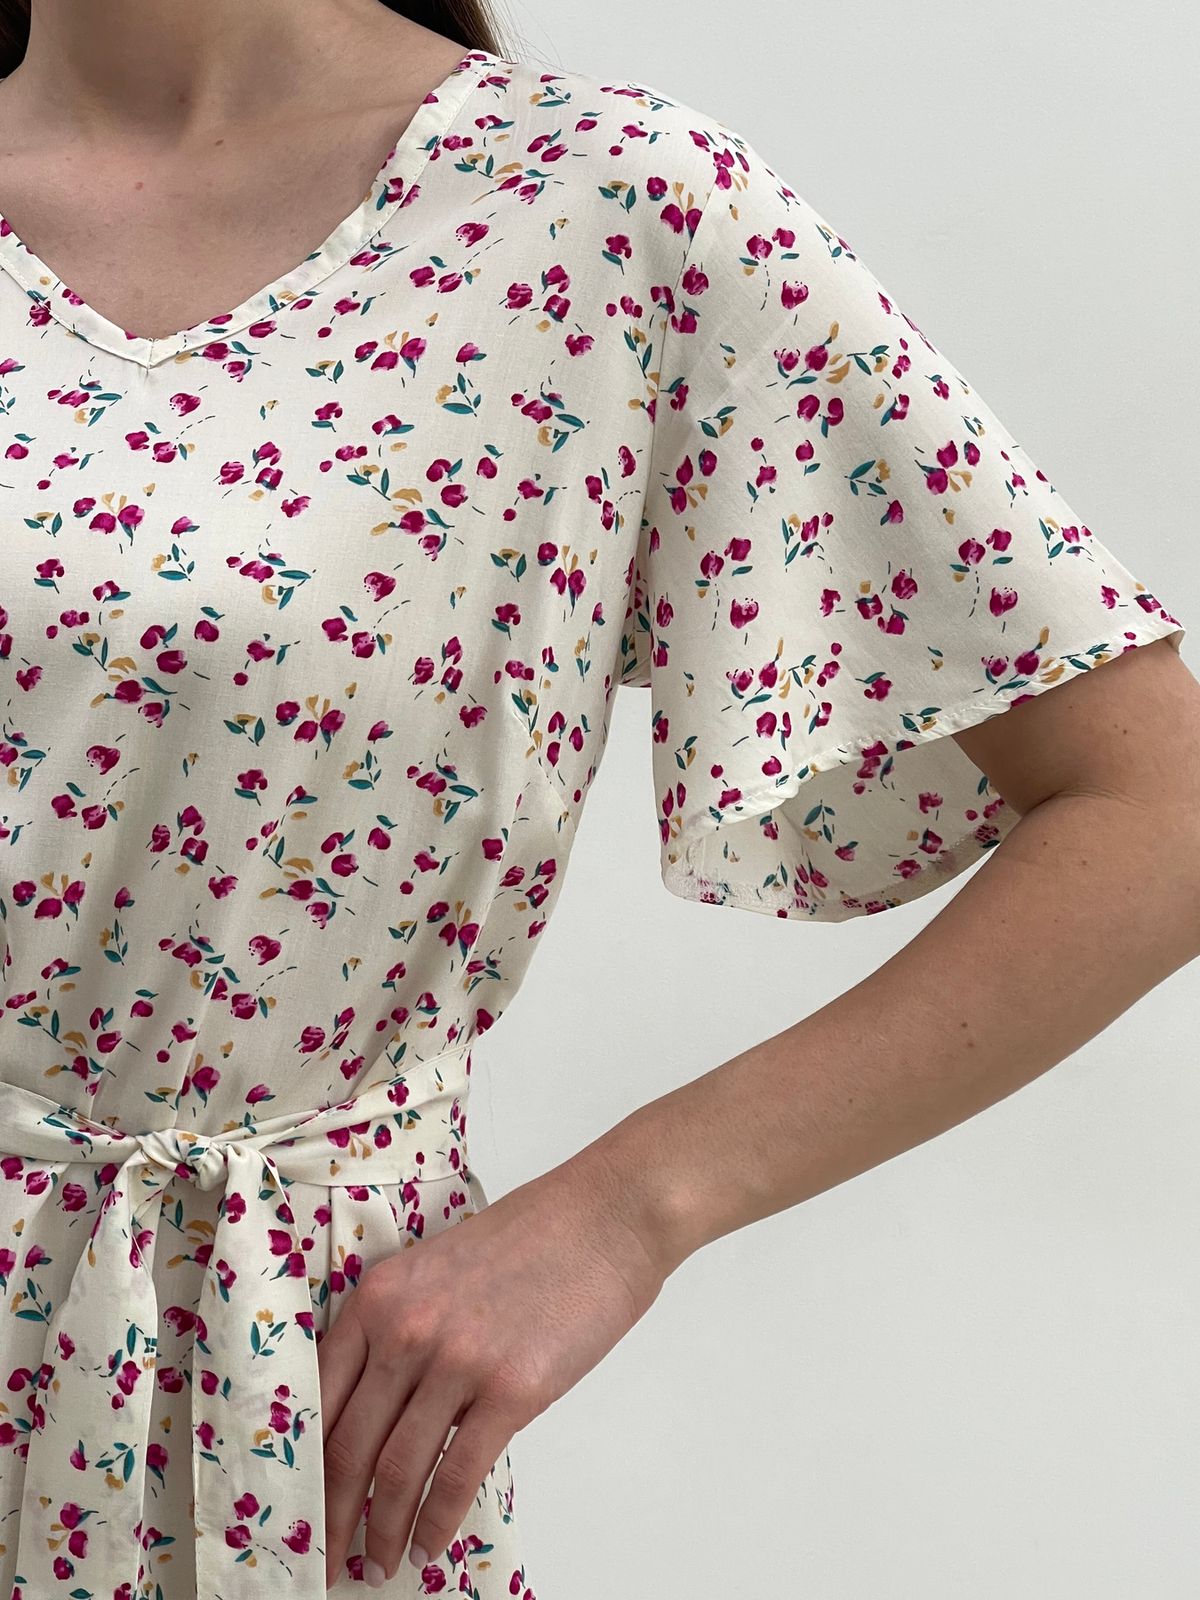 Купить Платье летнее ниже колен в цветочек белое Merlini Мискано 700001286 размер 42-44 (S-M) в интернет-магазине